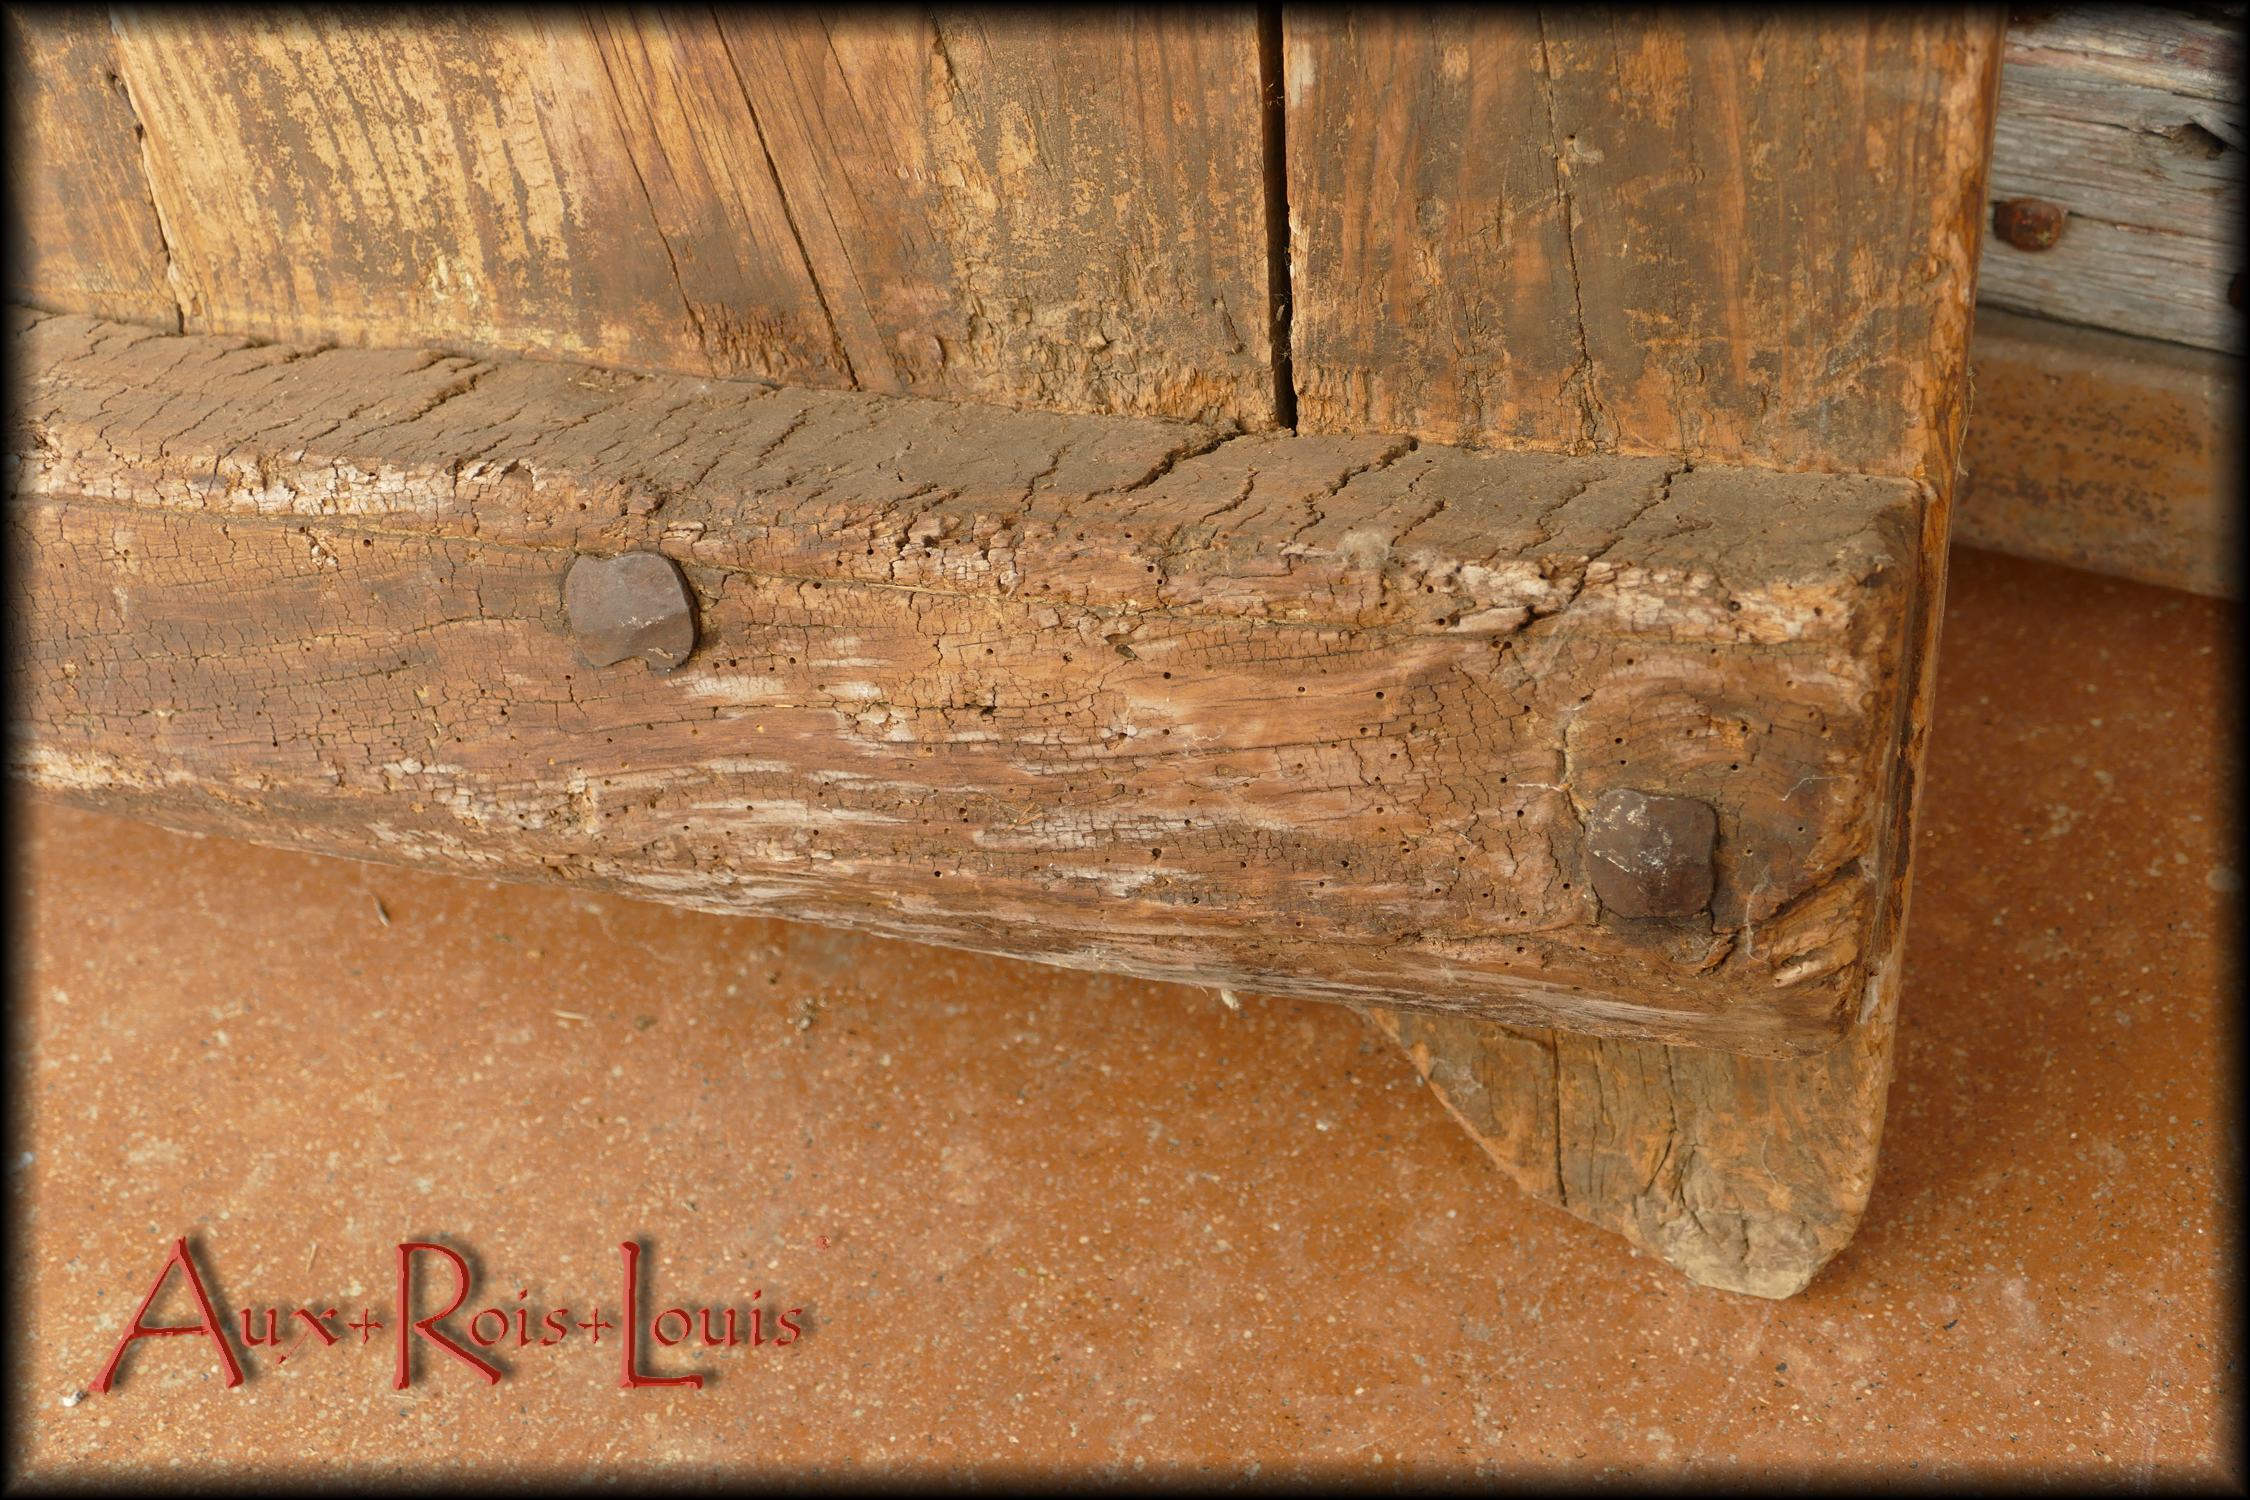 Détail de la traverse du bas avec de plus près deux têtes de clous forgés tels qu'on les martelait manuellement au XVIIIᵉ siècle en Aveyron.